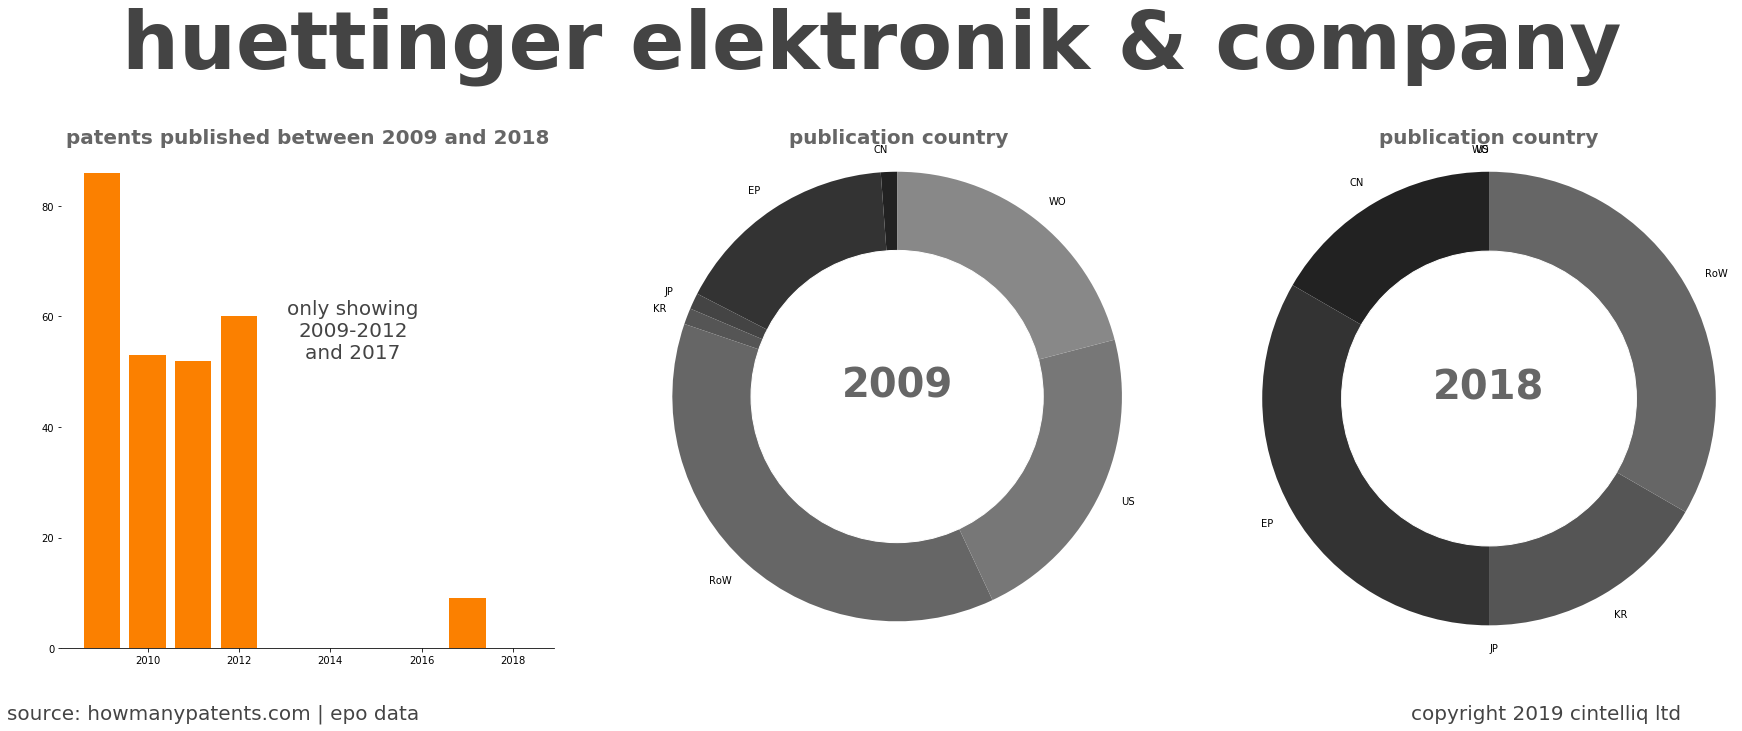 summary of patents for Huettinger Elektronik & Company